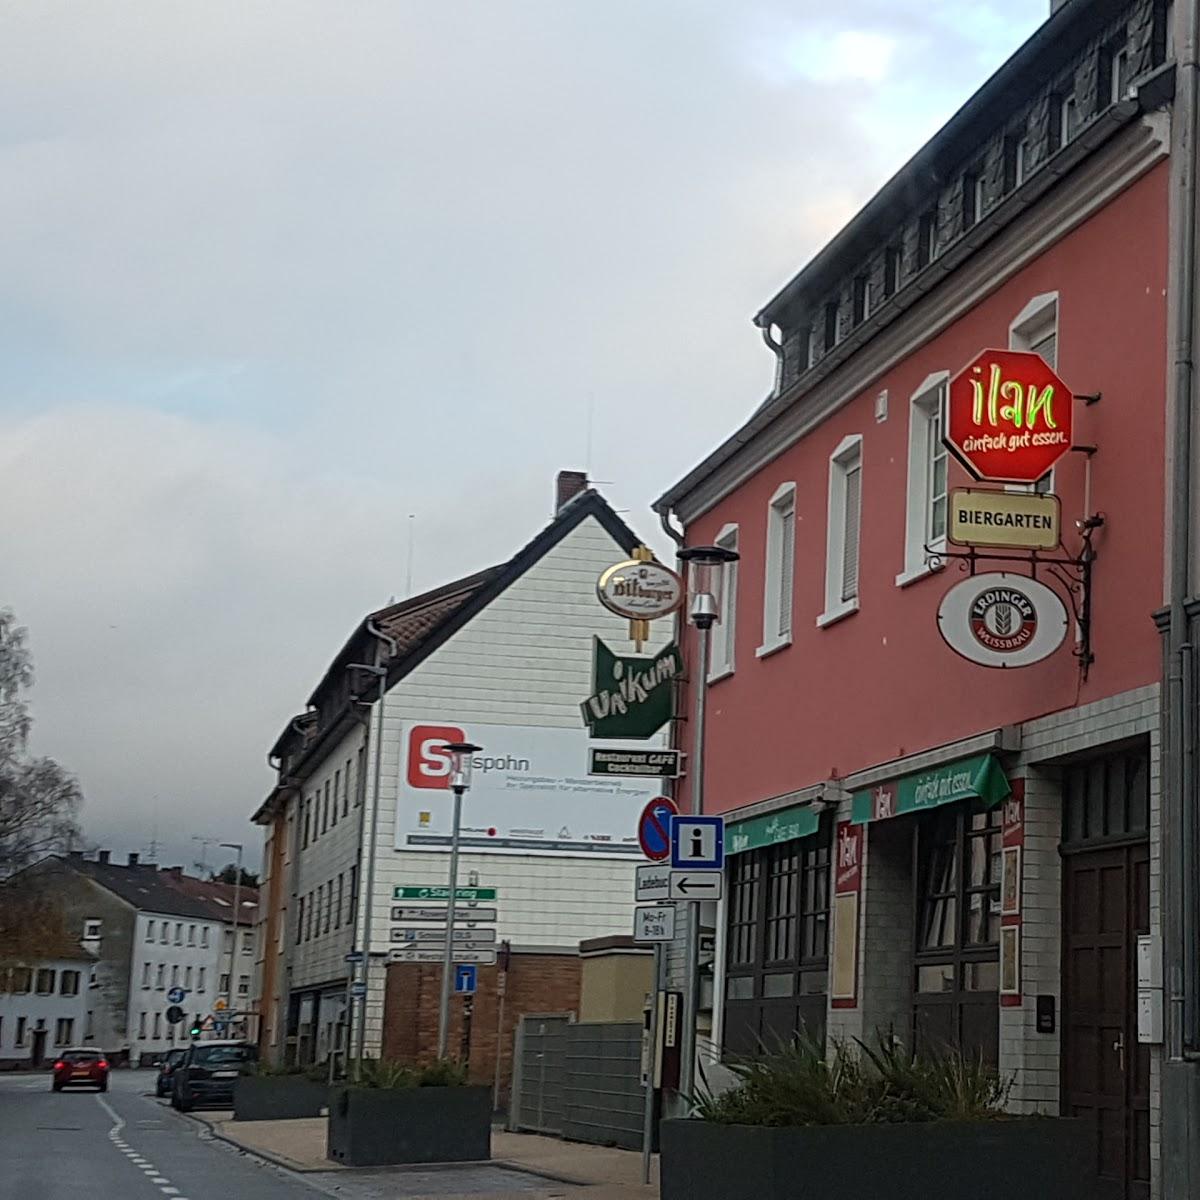 Restaurant "Ilan" in Zweibrücken